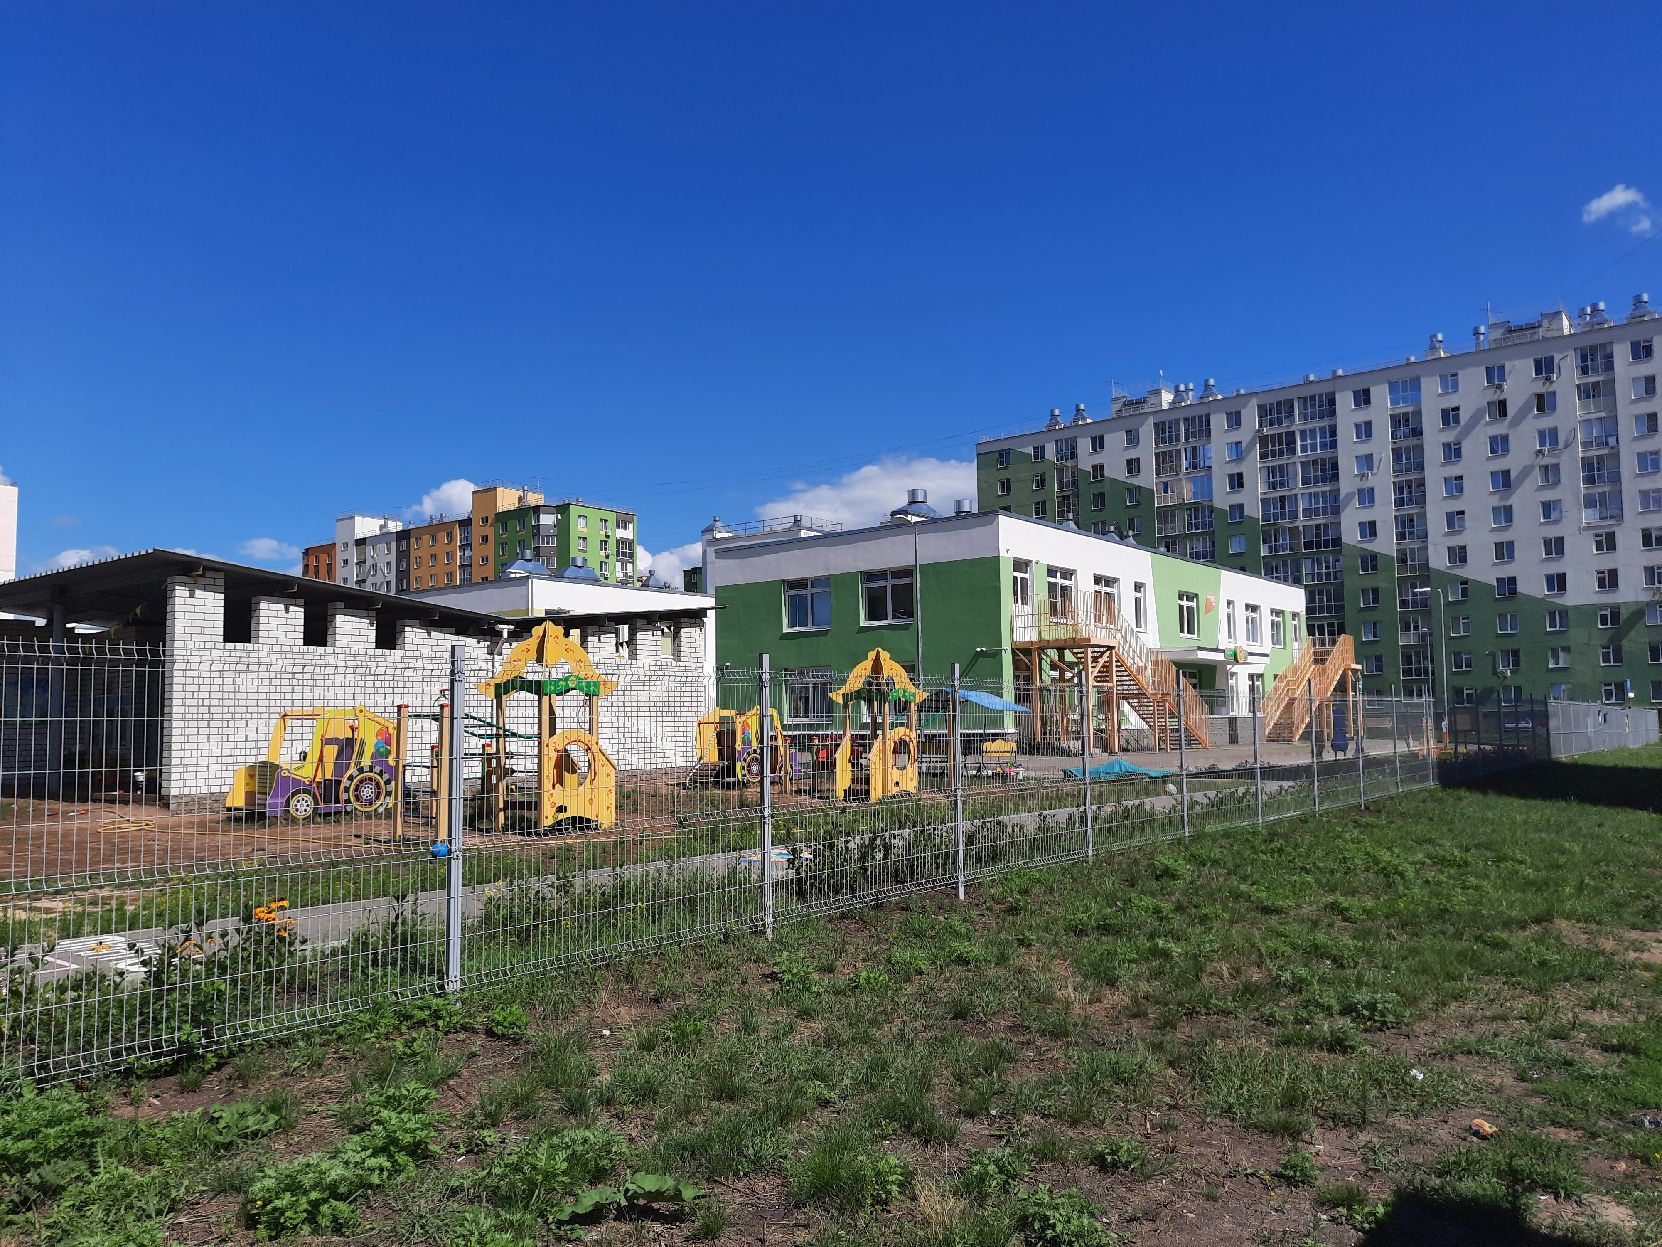 9 детсадов в Нижнем Новгороде, сроки строительства которых сорвали, обещают сдать в 2022-м - фото 1